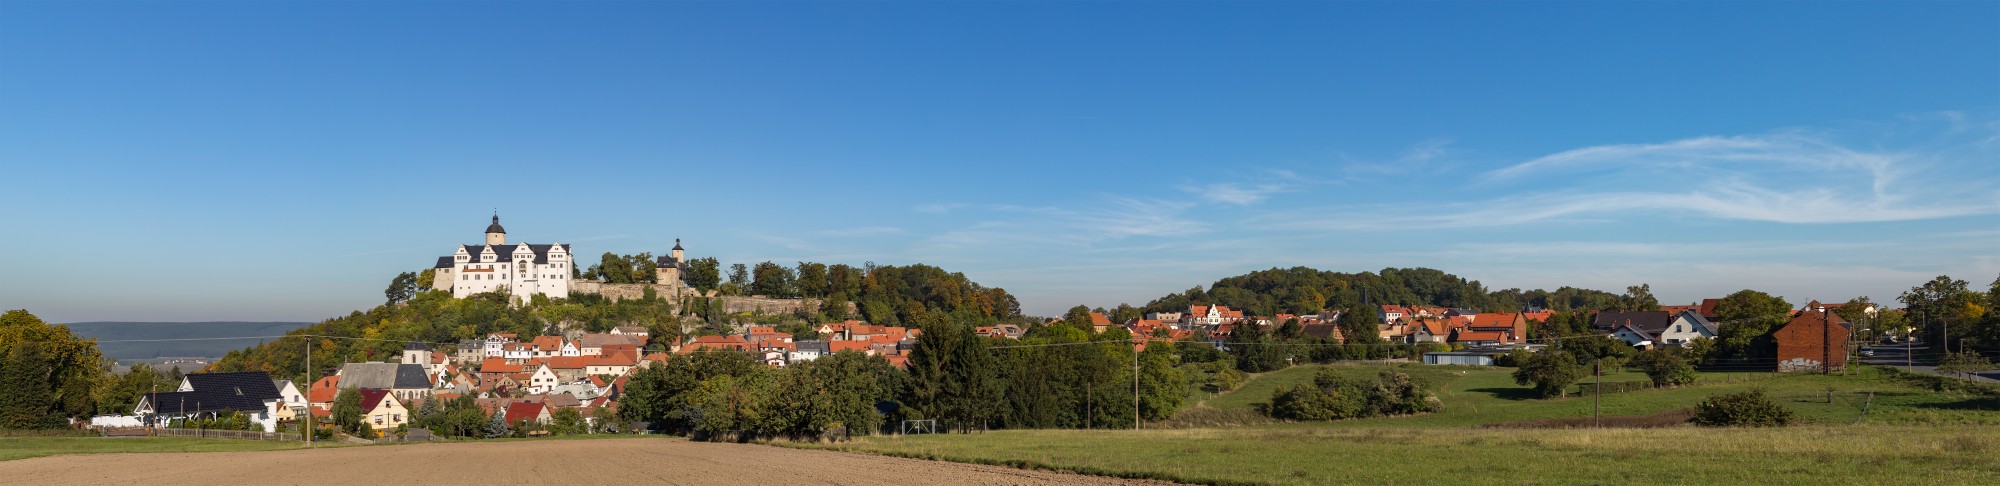 Stadt Ranis, Panorama, 151002, ako